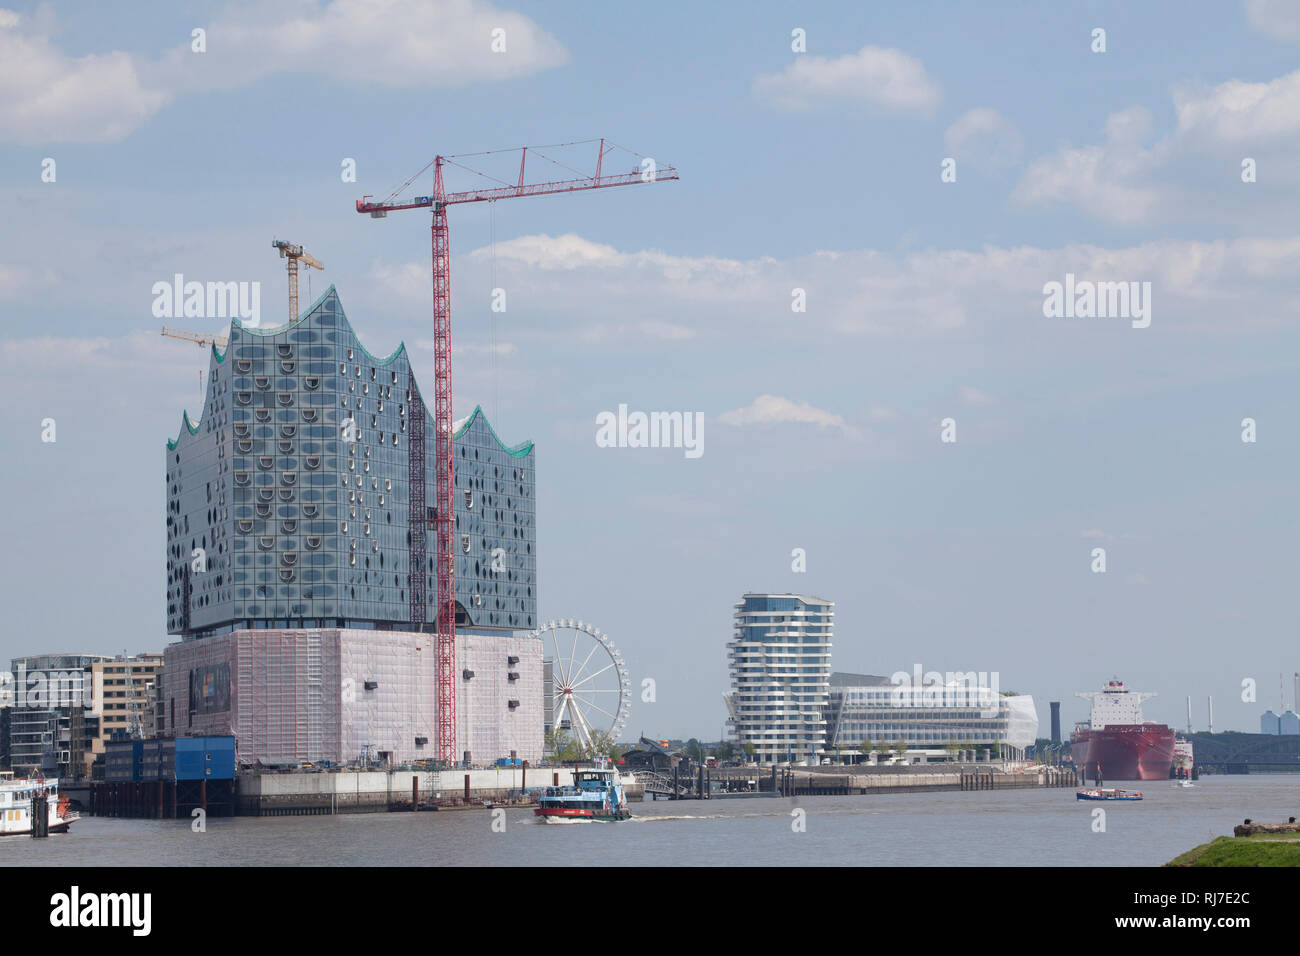 Elbphilharmonie mit Fluss Elbe, Hamburg, Deutschland, Europa Banque D'Images